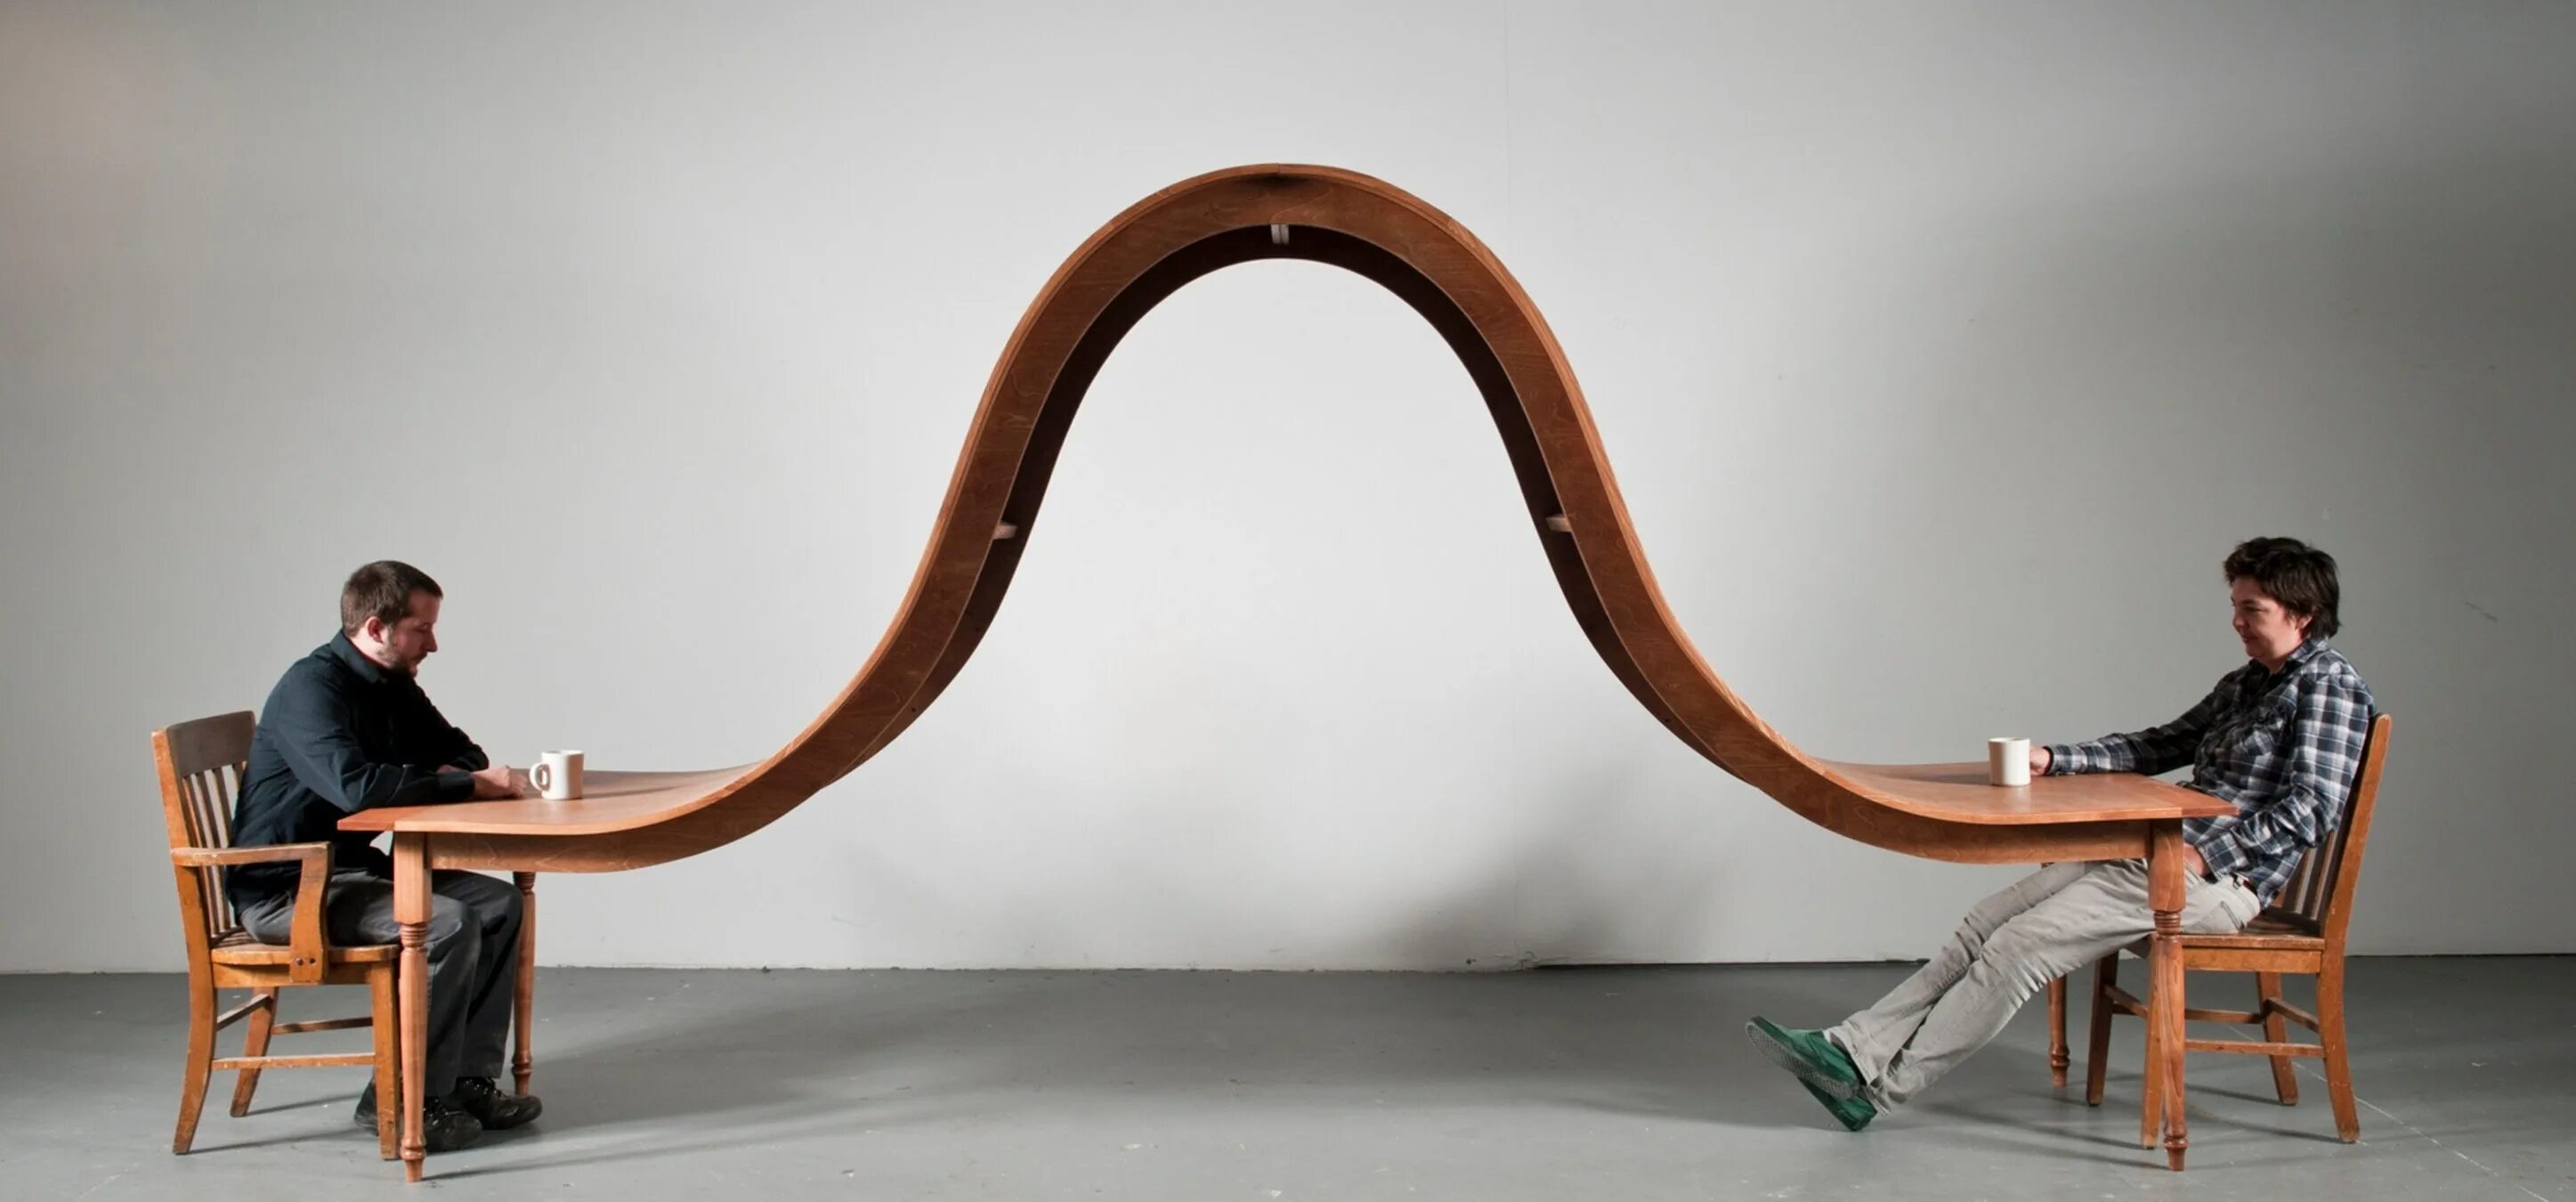 Не стандартно или нестандартно. Скульптуры Майкла бейтса столы. Необычная дизайнерская мебель. Необычные дизайнерские решения.